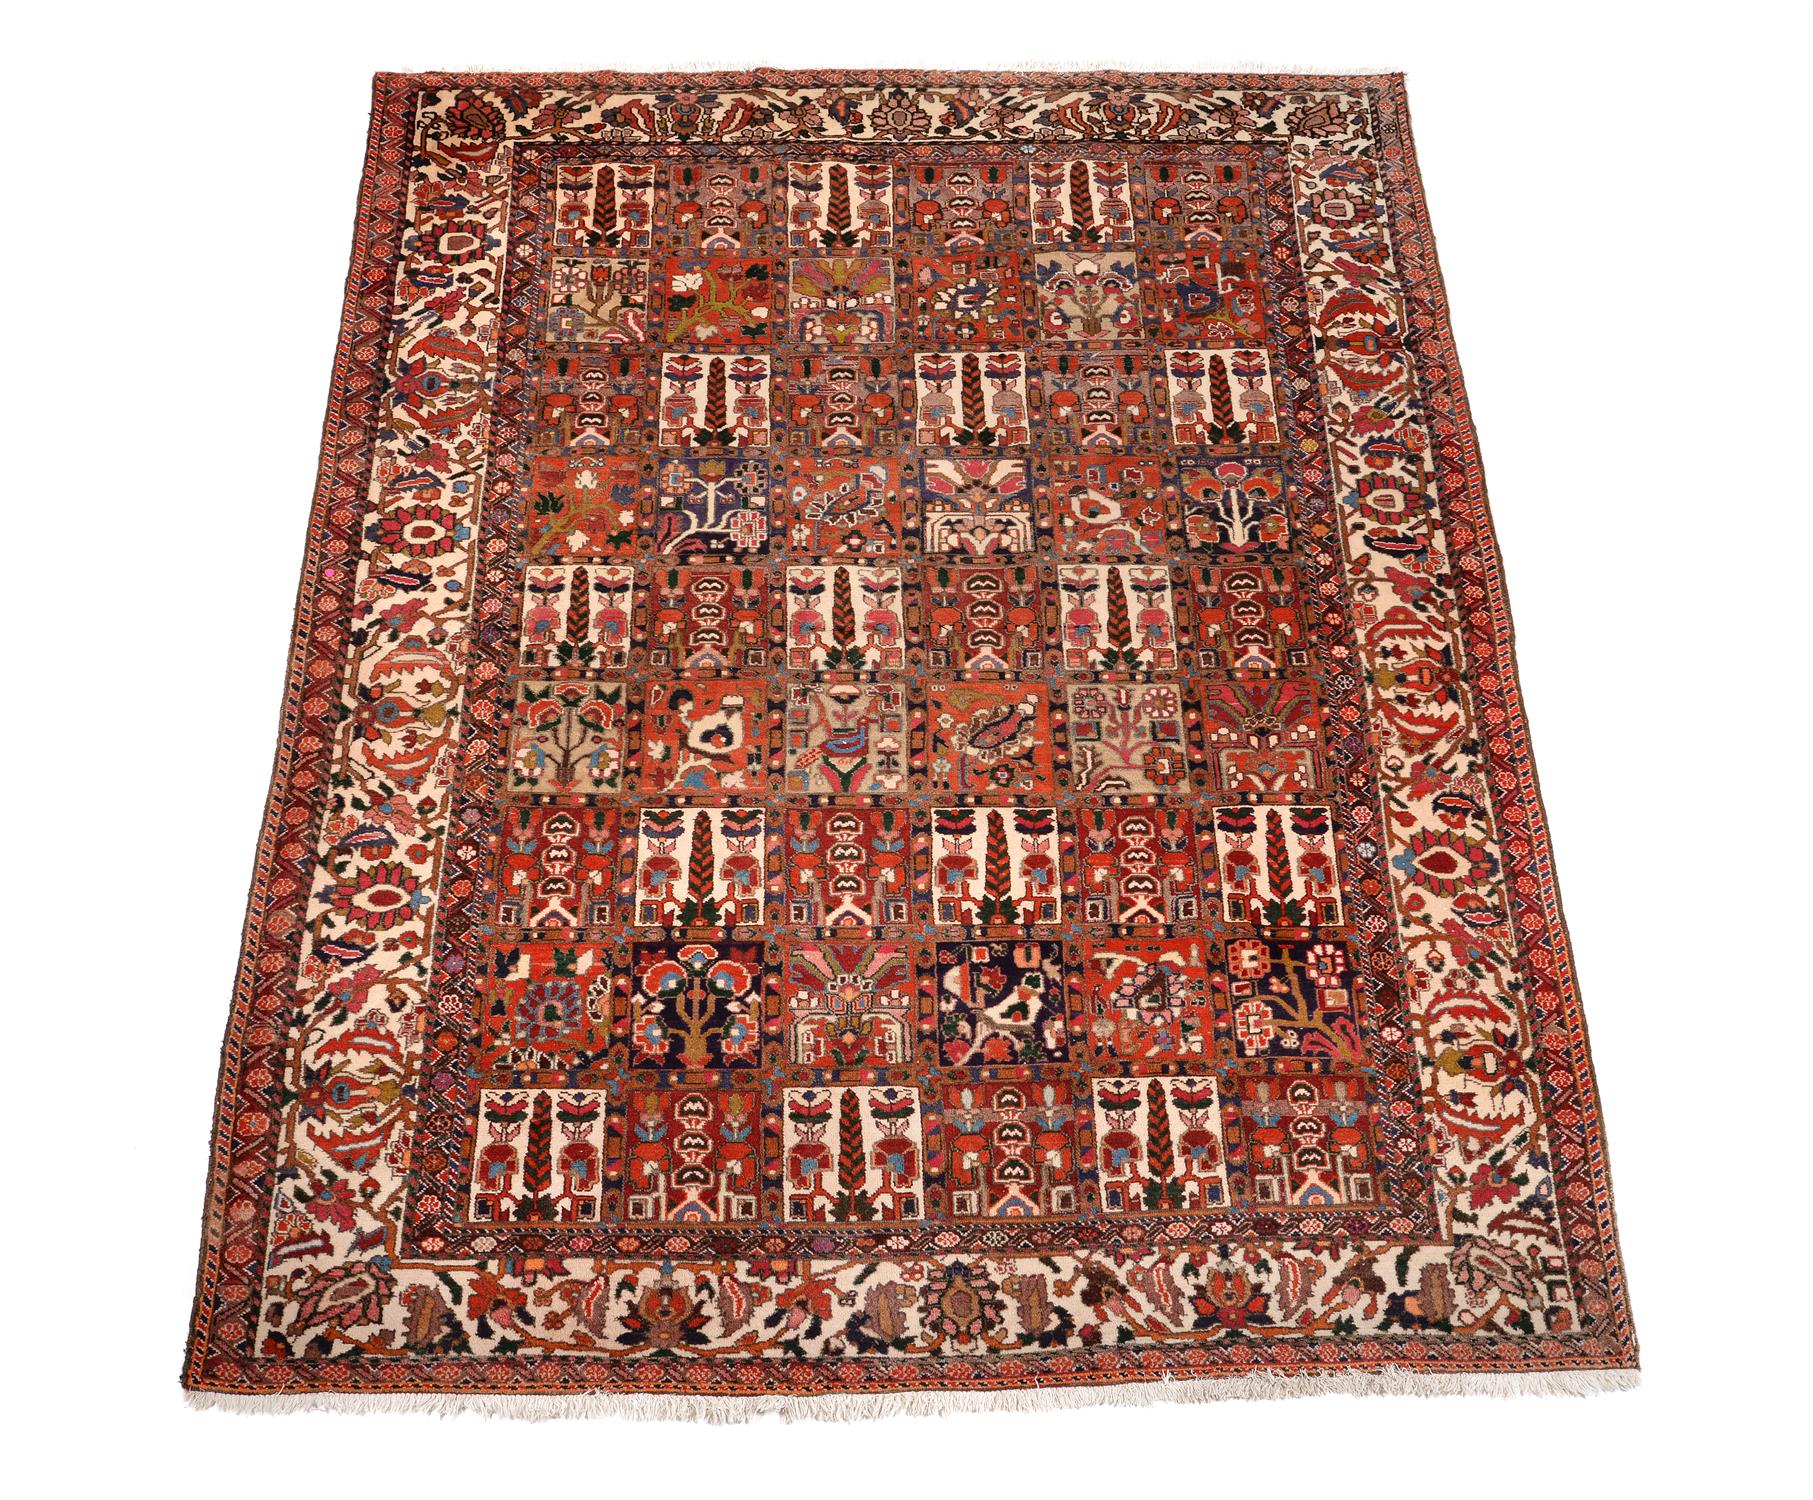 A Joshogan carpet